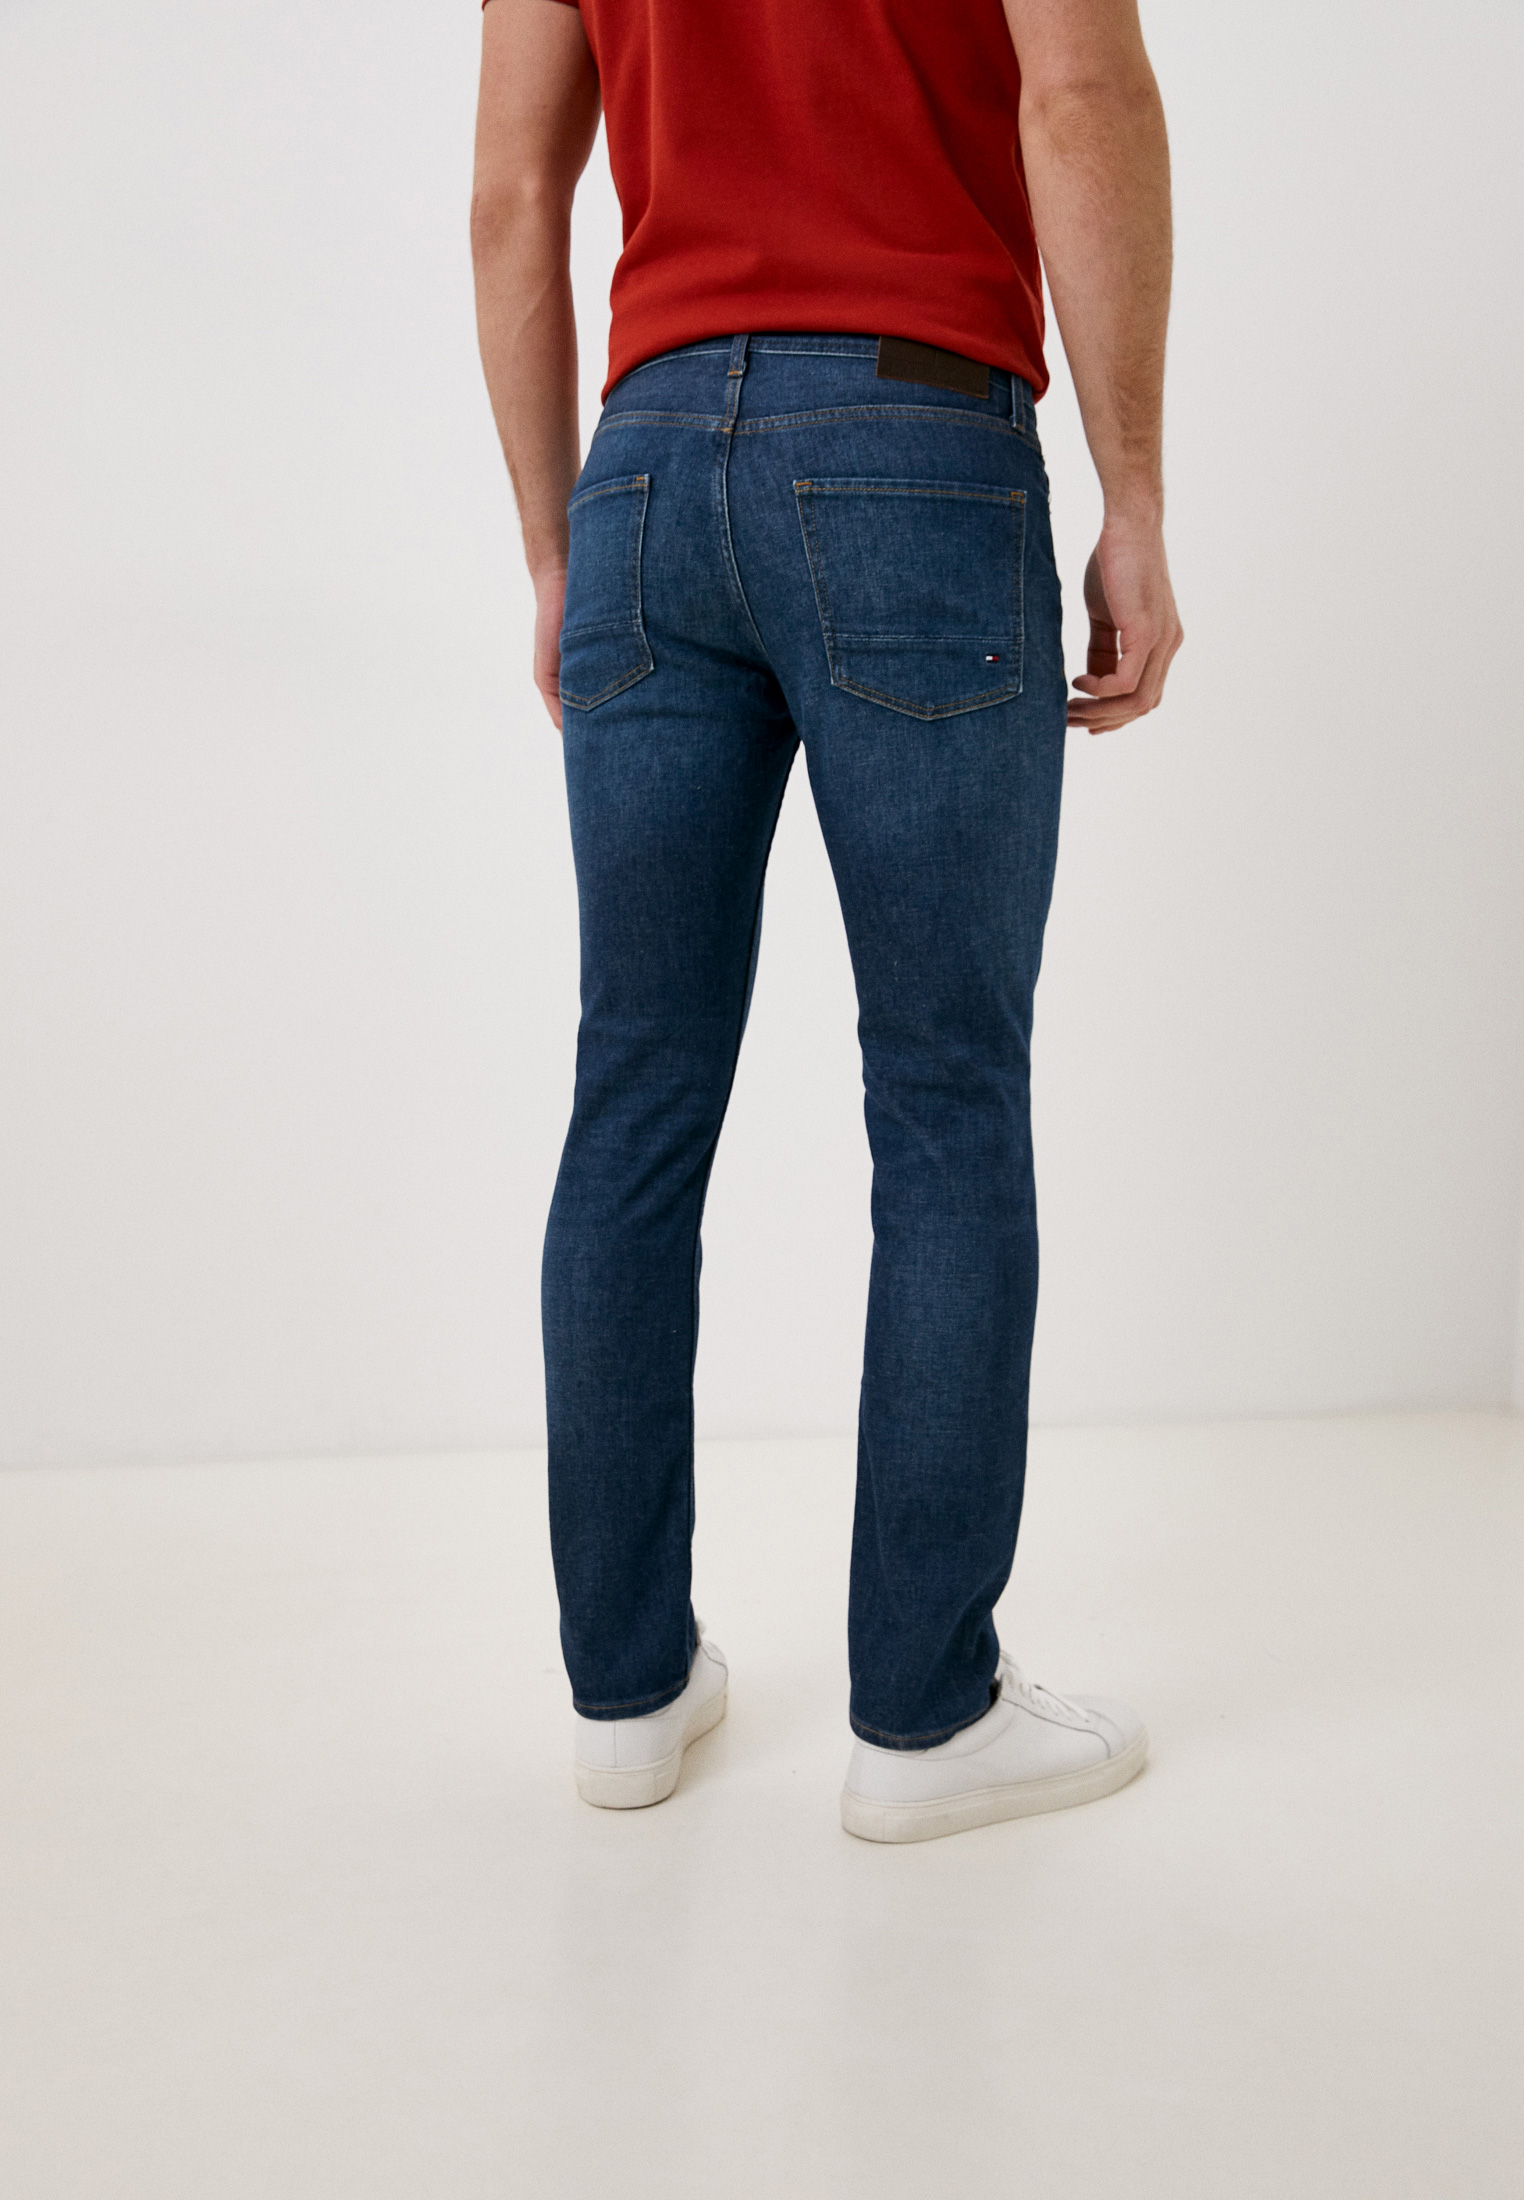 Зауженные джинсы Tommy Hilfiger (Томми Хилфигер) MW0MW23690: изображение 3